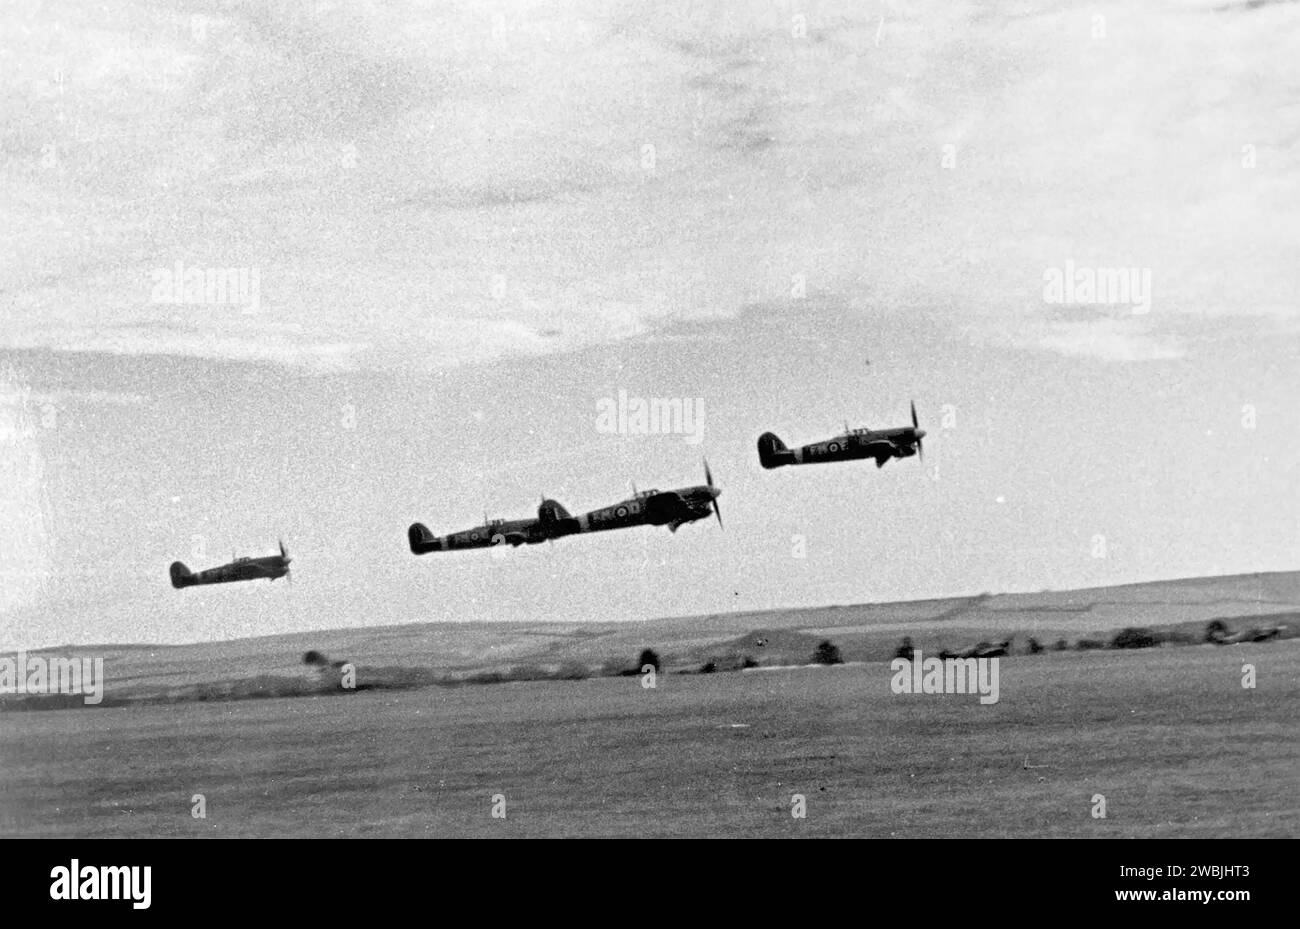 257 9BURMA0 SQUADRON RAF. La prima sezione di un volo di otto tifoni IB decollò dalla loro base a Warmwell, nel Dorset, durante l'estate del 1943 per attaccare le e-boat tedesche sulla costa francese. Foto: Eric Spencer Foto Stock